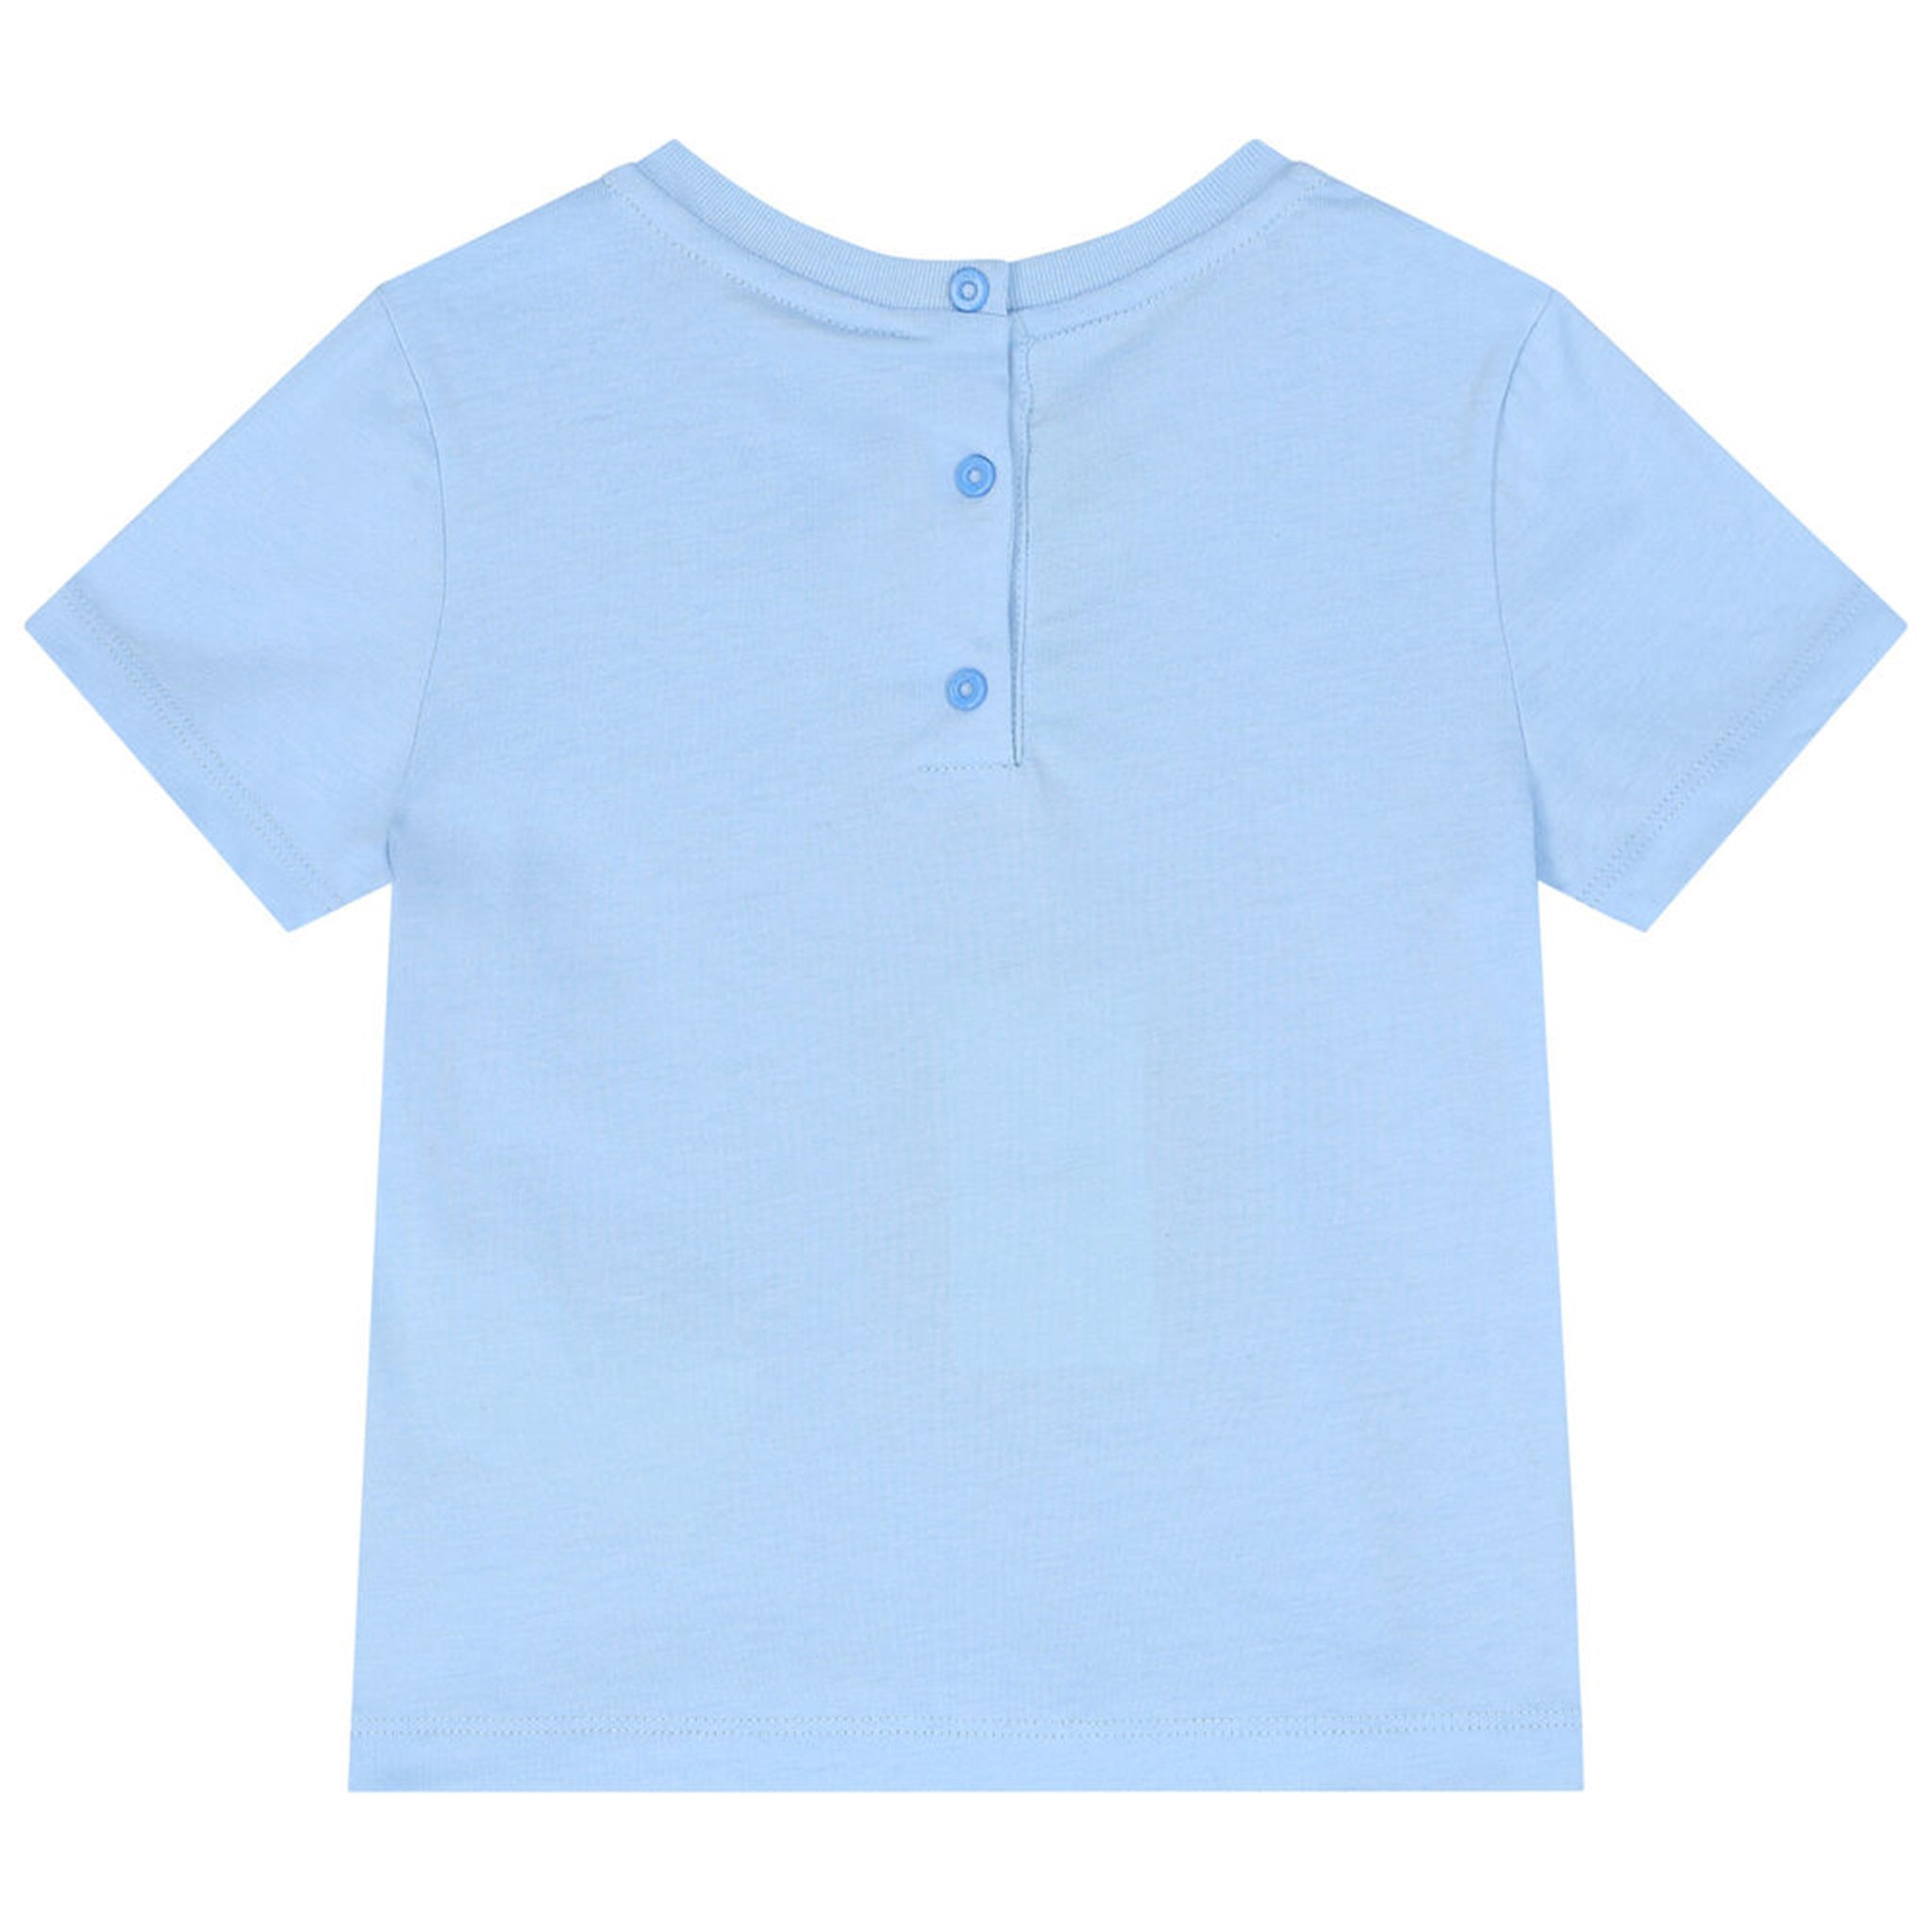 Fendi Baby Unisex Teddy Bear T-shirt Blue 18M